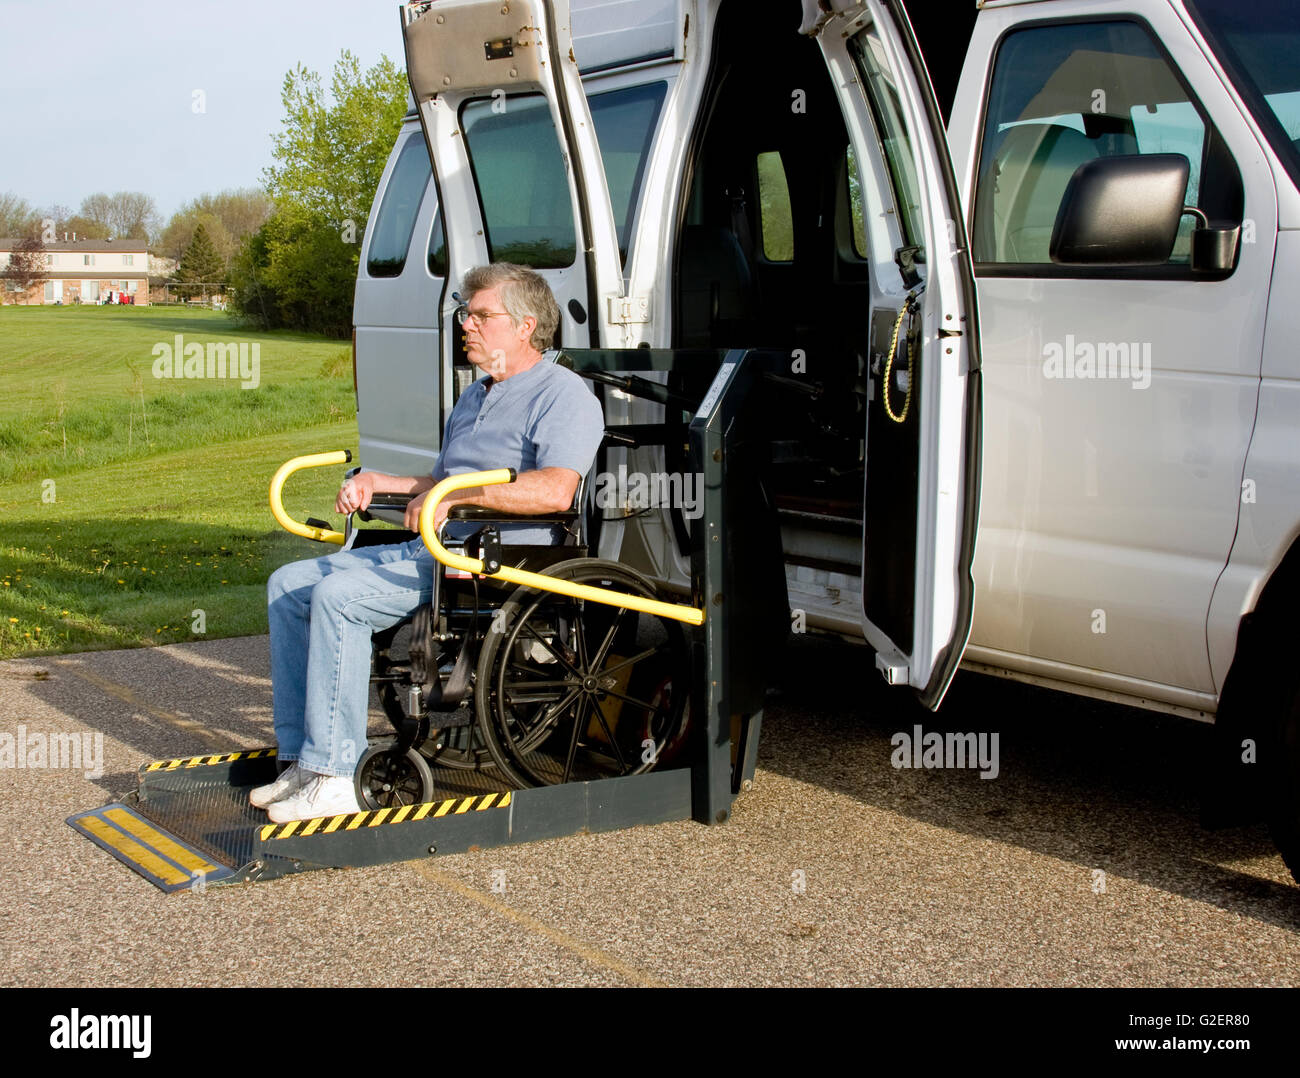 Handicap van con un uomo in sedia a rotelle su un dispositivo di  sollevamento Foto stock - Alamy